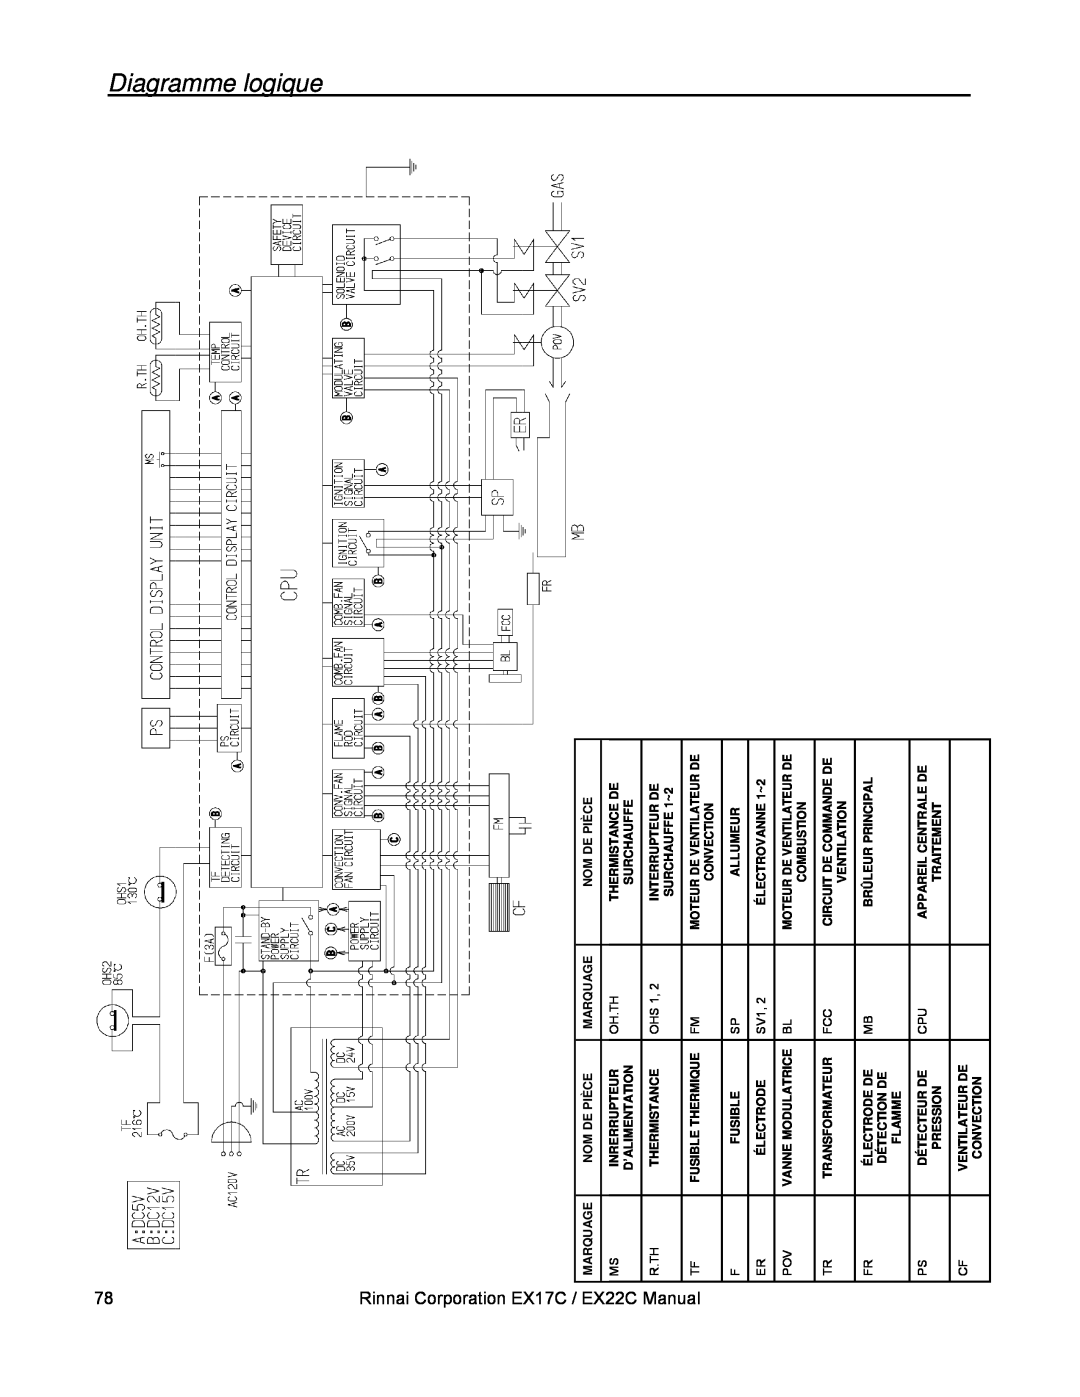 Rinnai installation manual Diagramme logique, Rinnai Corporation EX17C / EX22C Manual 